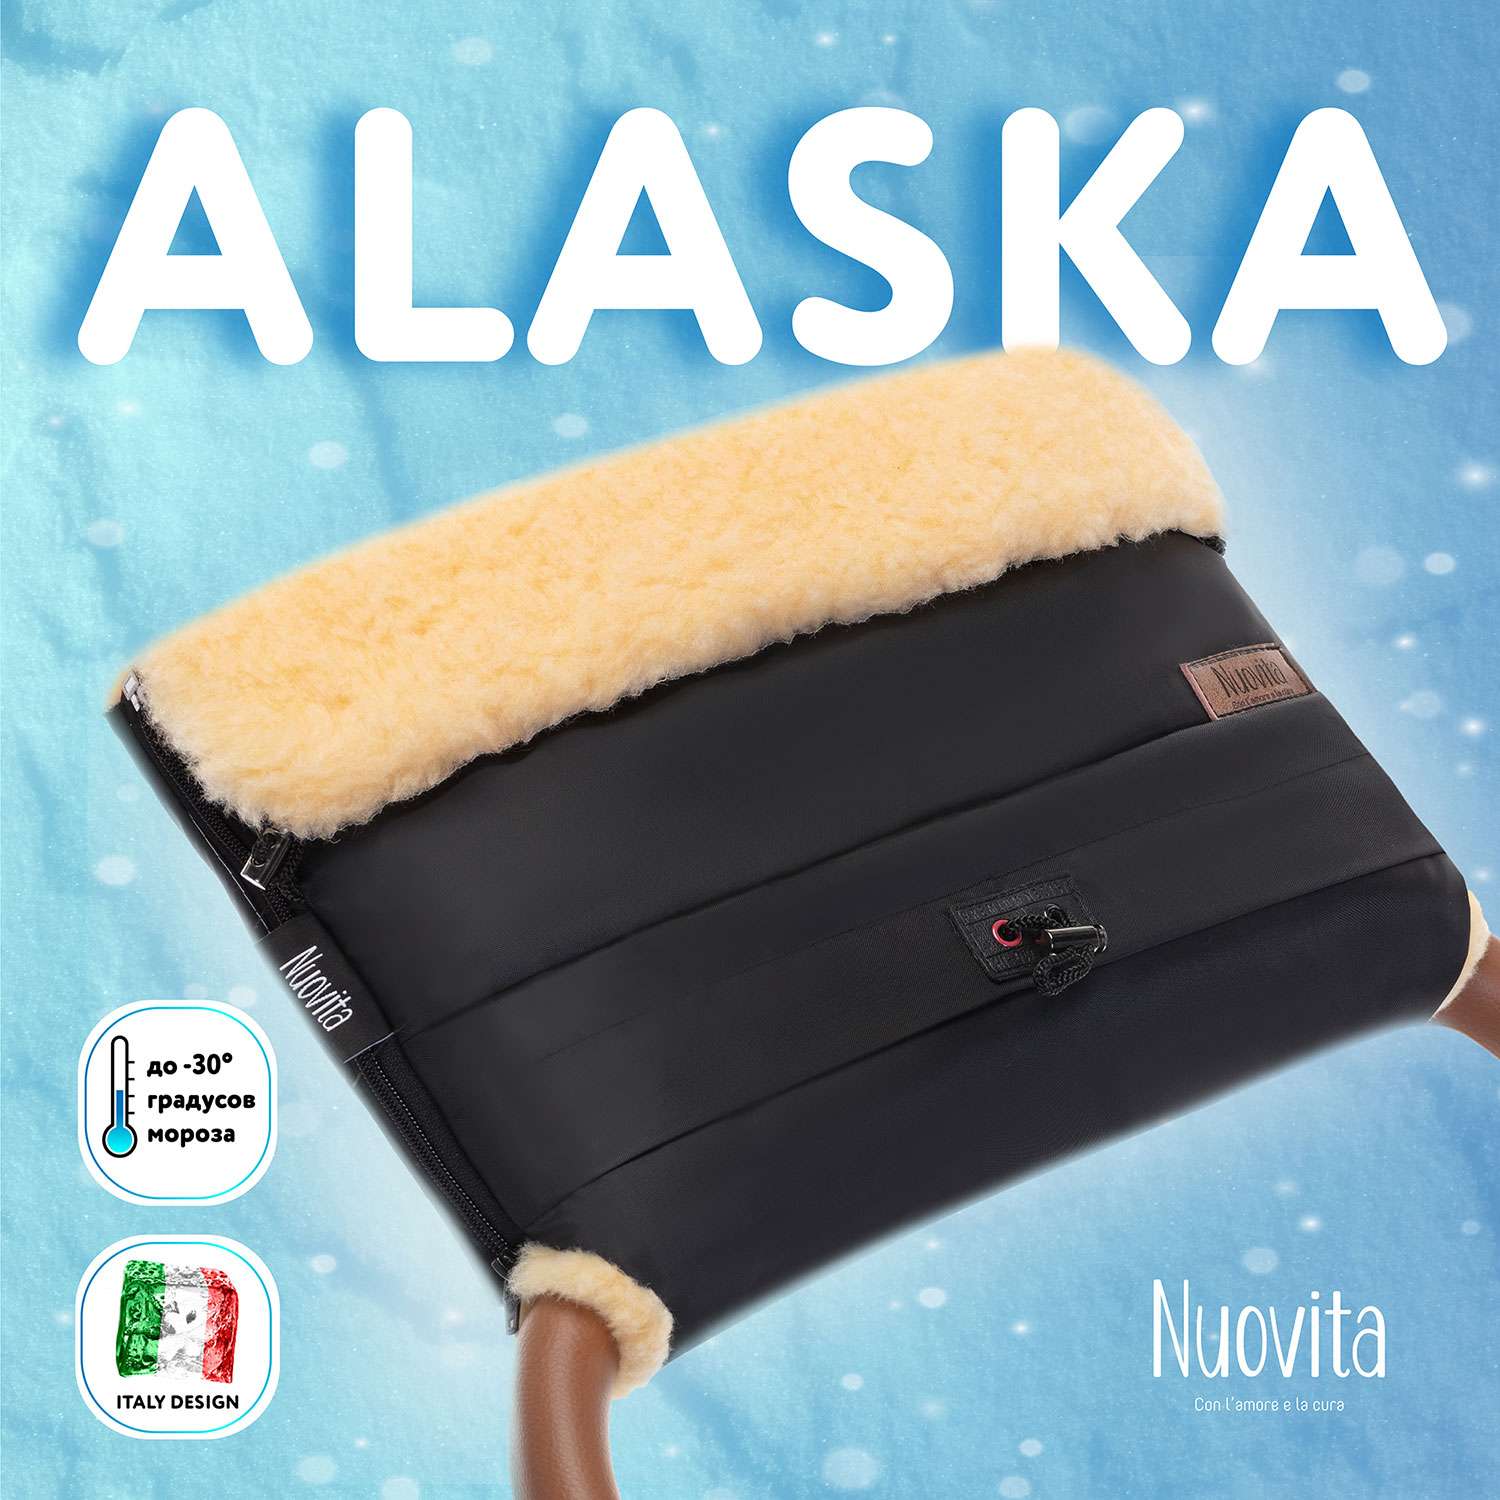 Муфта для коляски Nuovita меховая Alaska Pesco Черный NUO_mALAP_2088 - фото 2